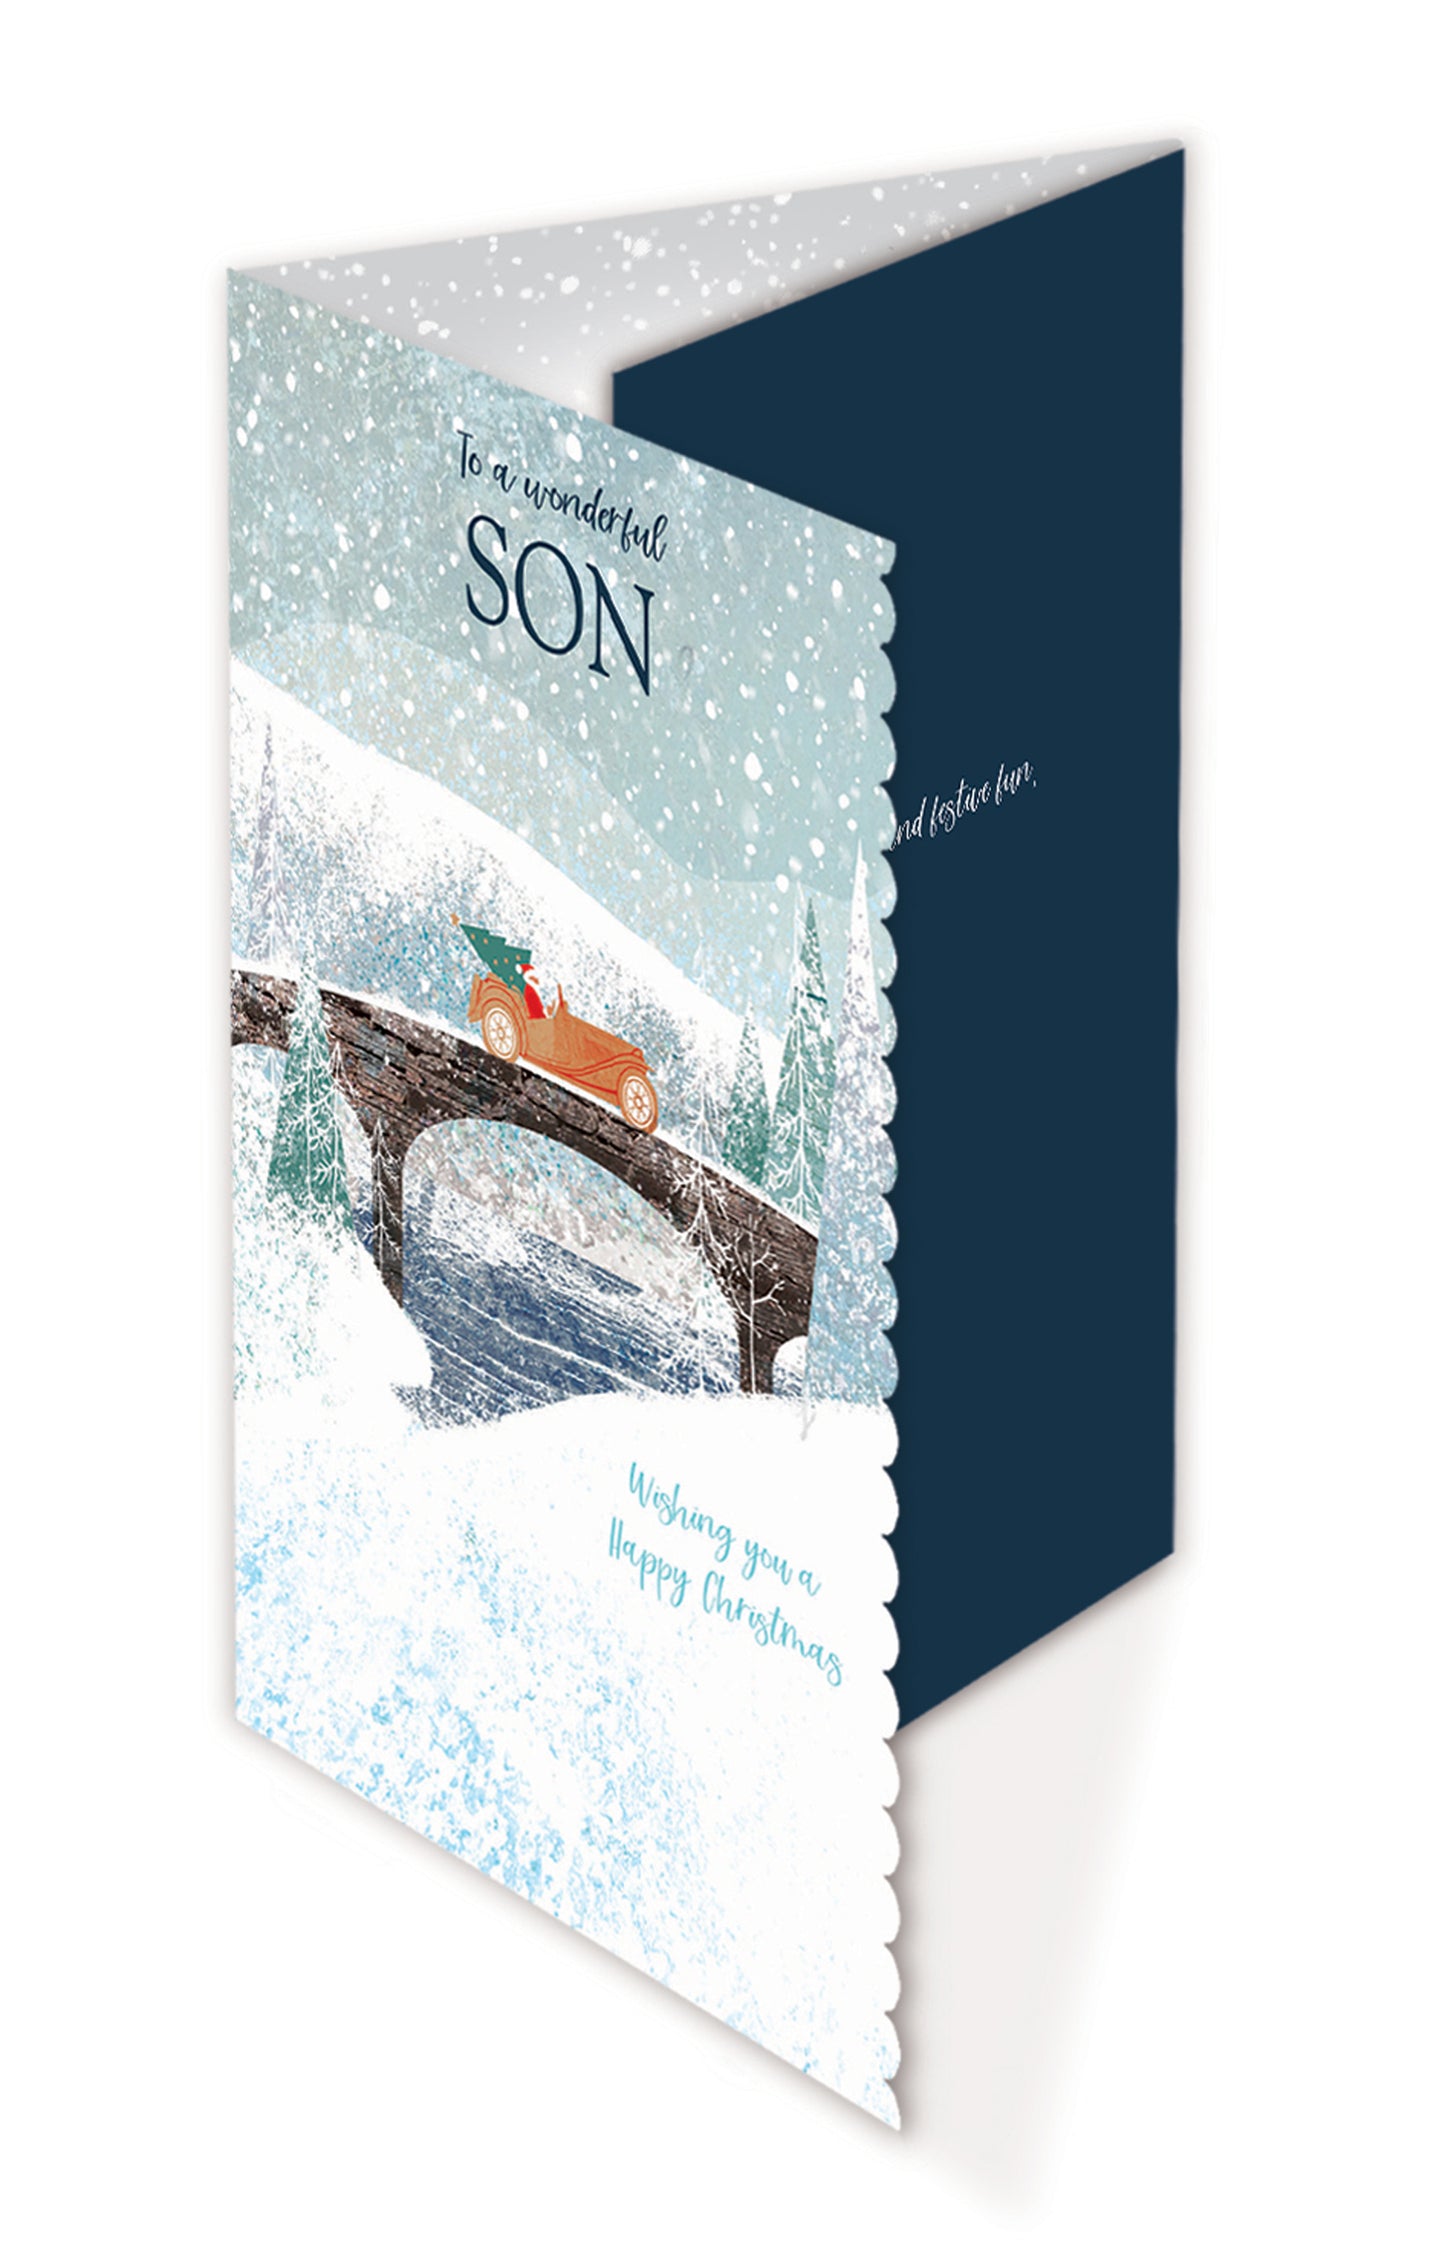 Christmas Card (Single) - Son - Car